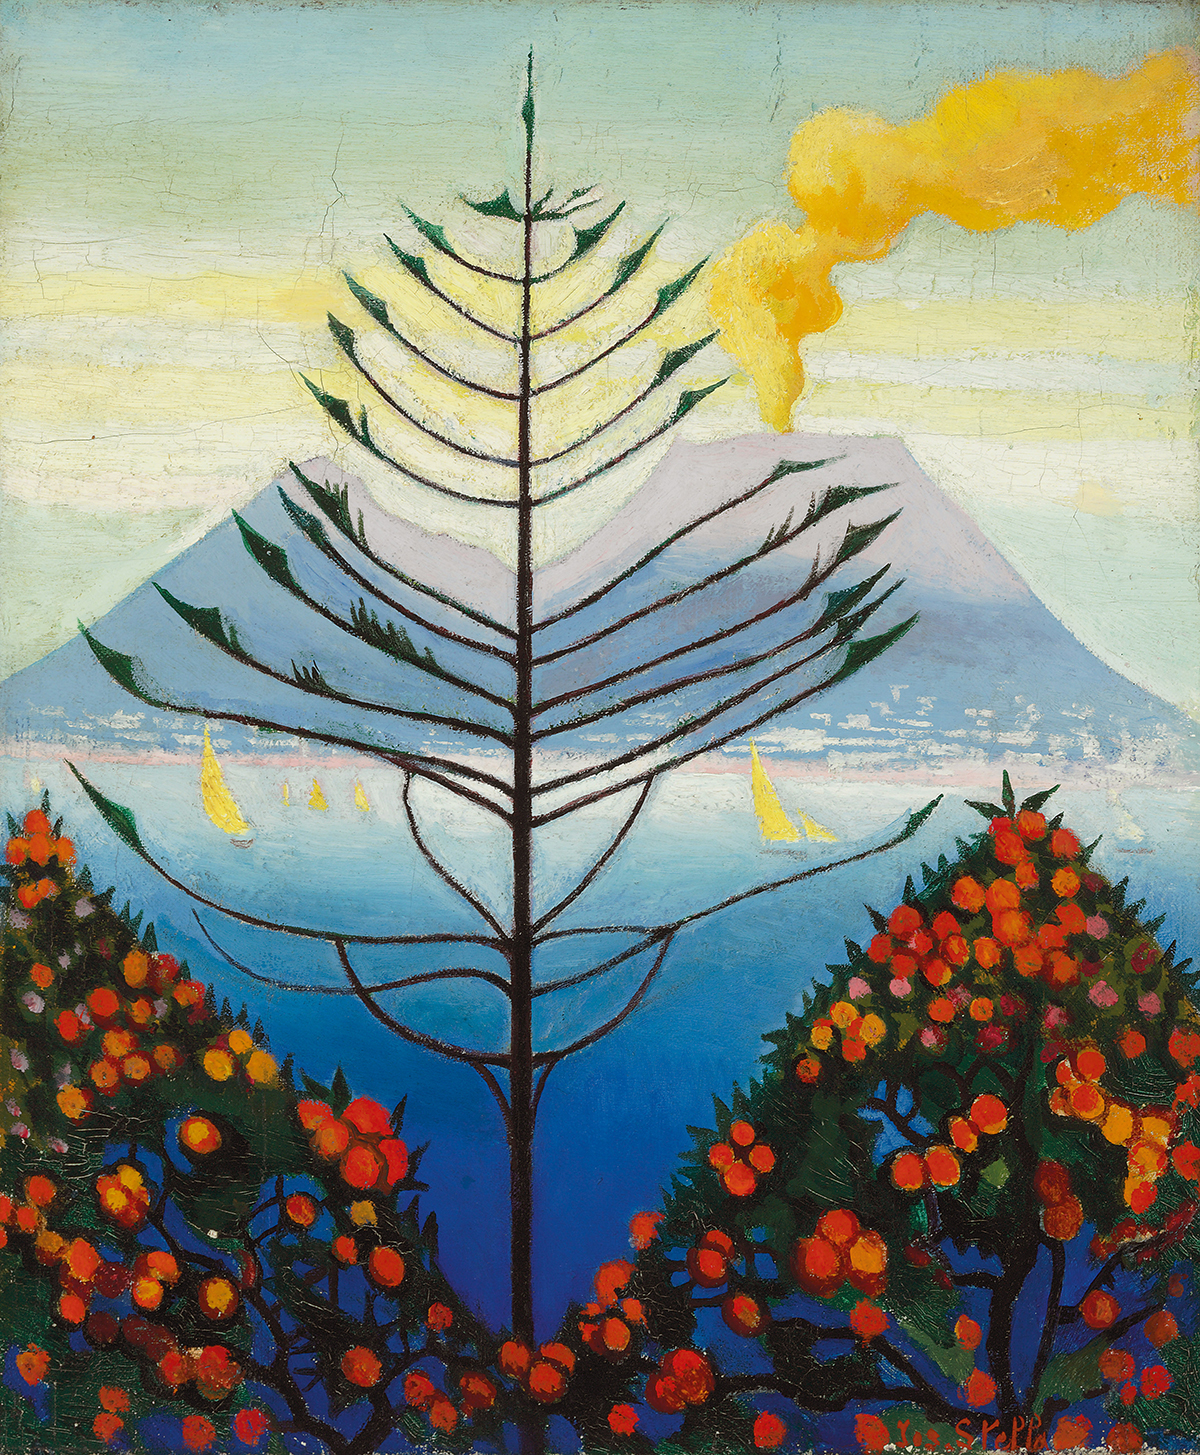 卡普里 by Joseph Stella - 約 1926 年至 1929 年 - 43.8 x 35.6 釐米 